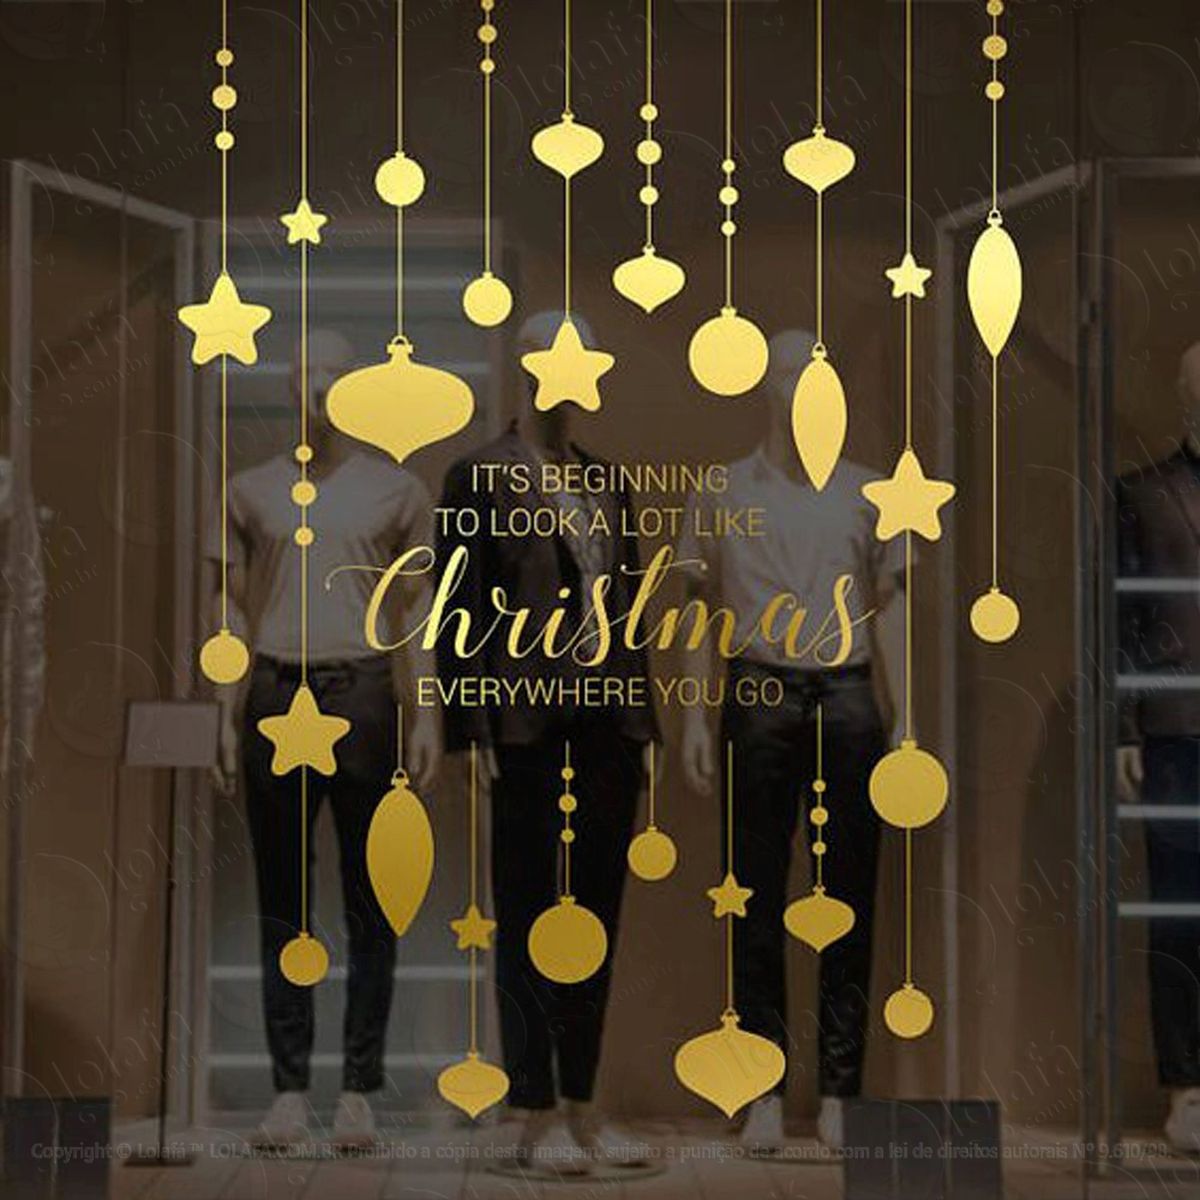 christmas decoração gold adesivo de natal para vitrine, parede, porta de vidro - decoração natalina mod:284